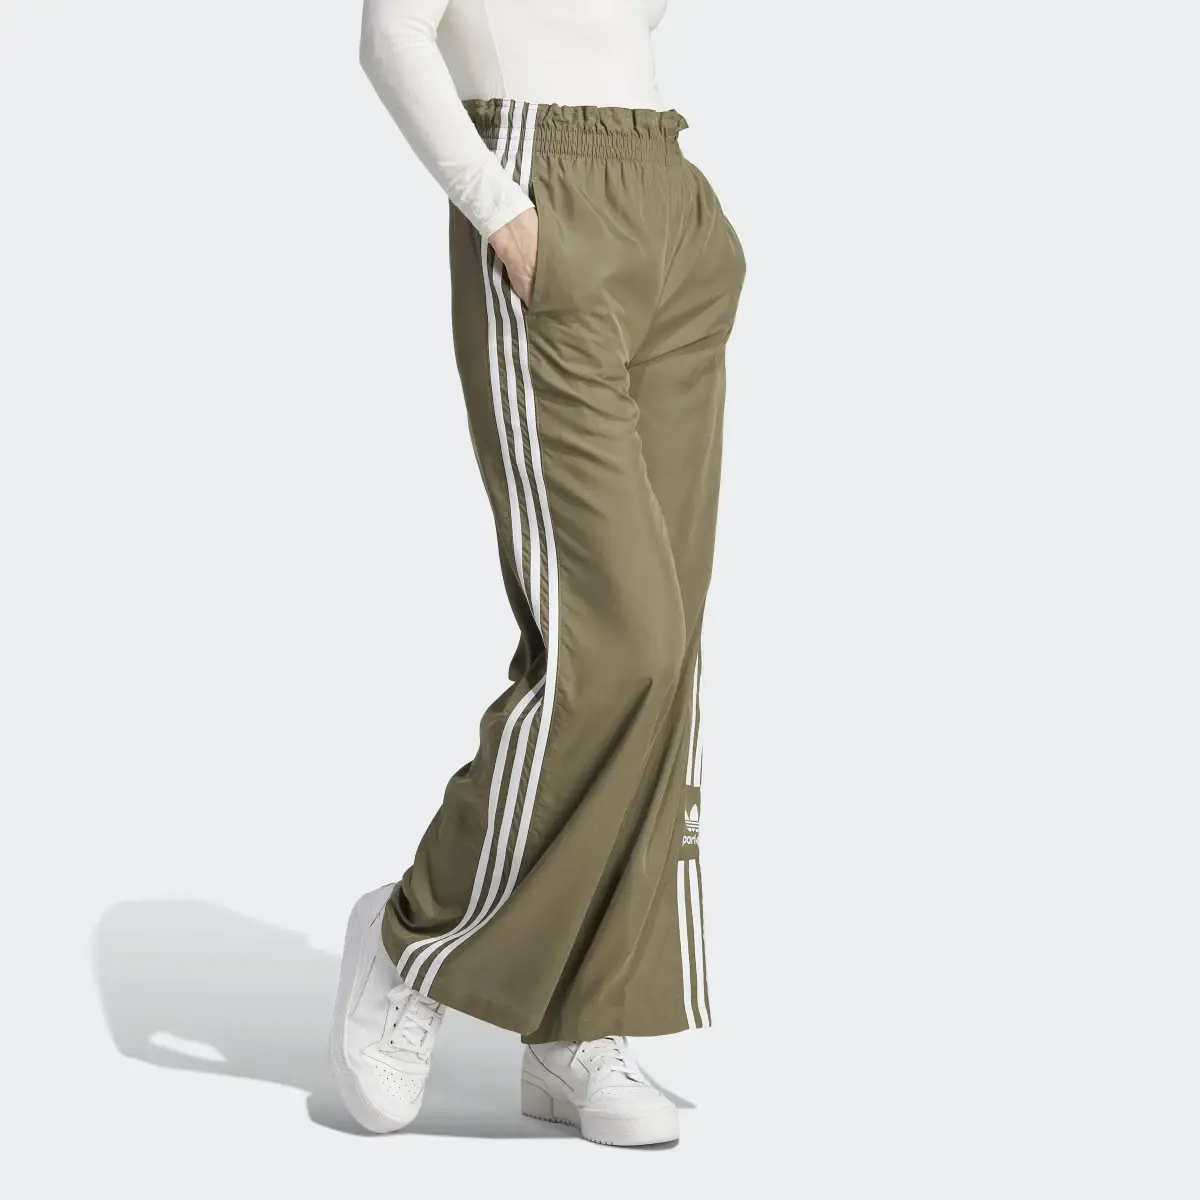 Adidas Pantaloni Parley. 1